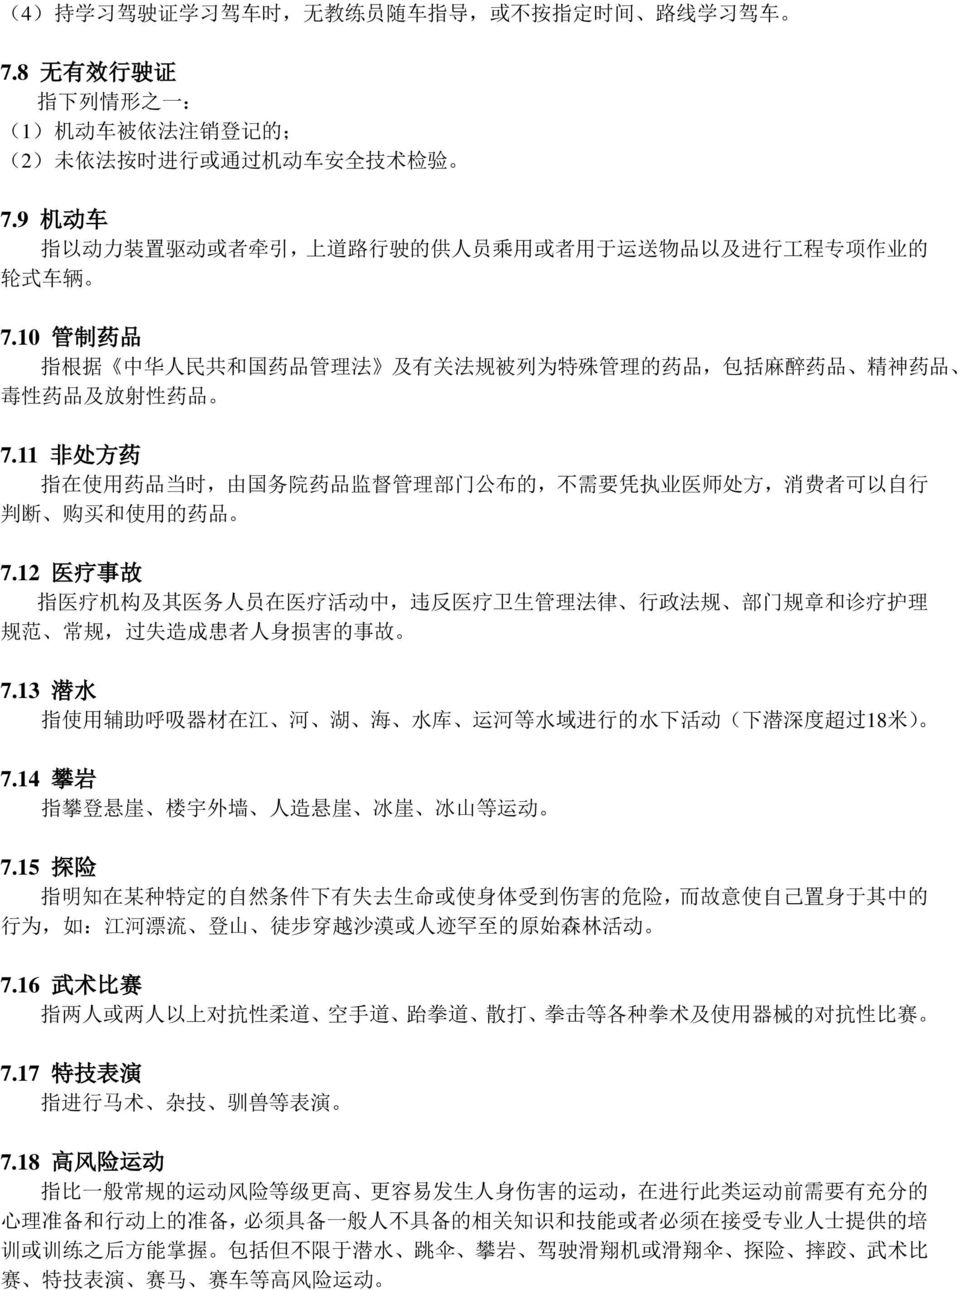 10 管 制 药 品 指 根 据 中 华 人 民 共 和 国 药 品 管 理 法 及 有 关 法 规 被 列 为 特 殊 管 理 的 药 品, 包 括 麻 醉 药 品 精 神 药 品 毒 性 药 品 及 放 射 性 药 品 7.